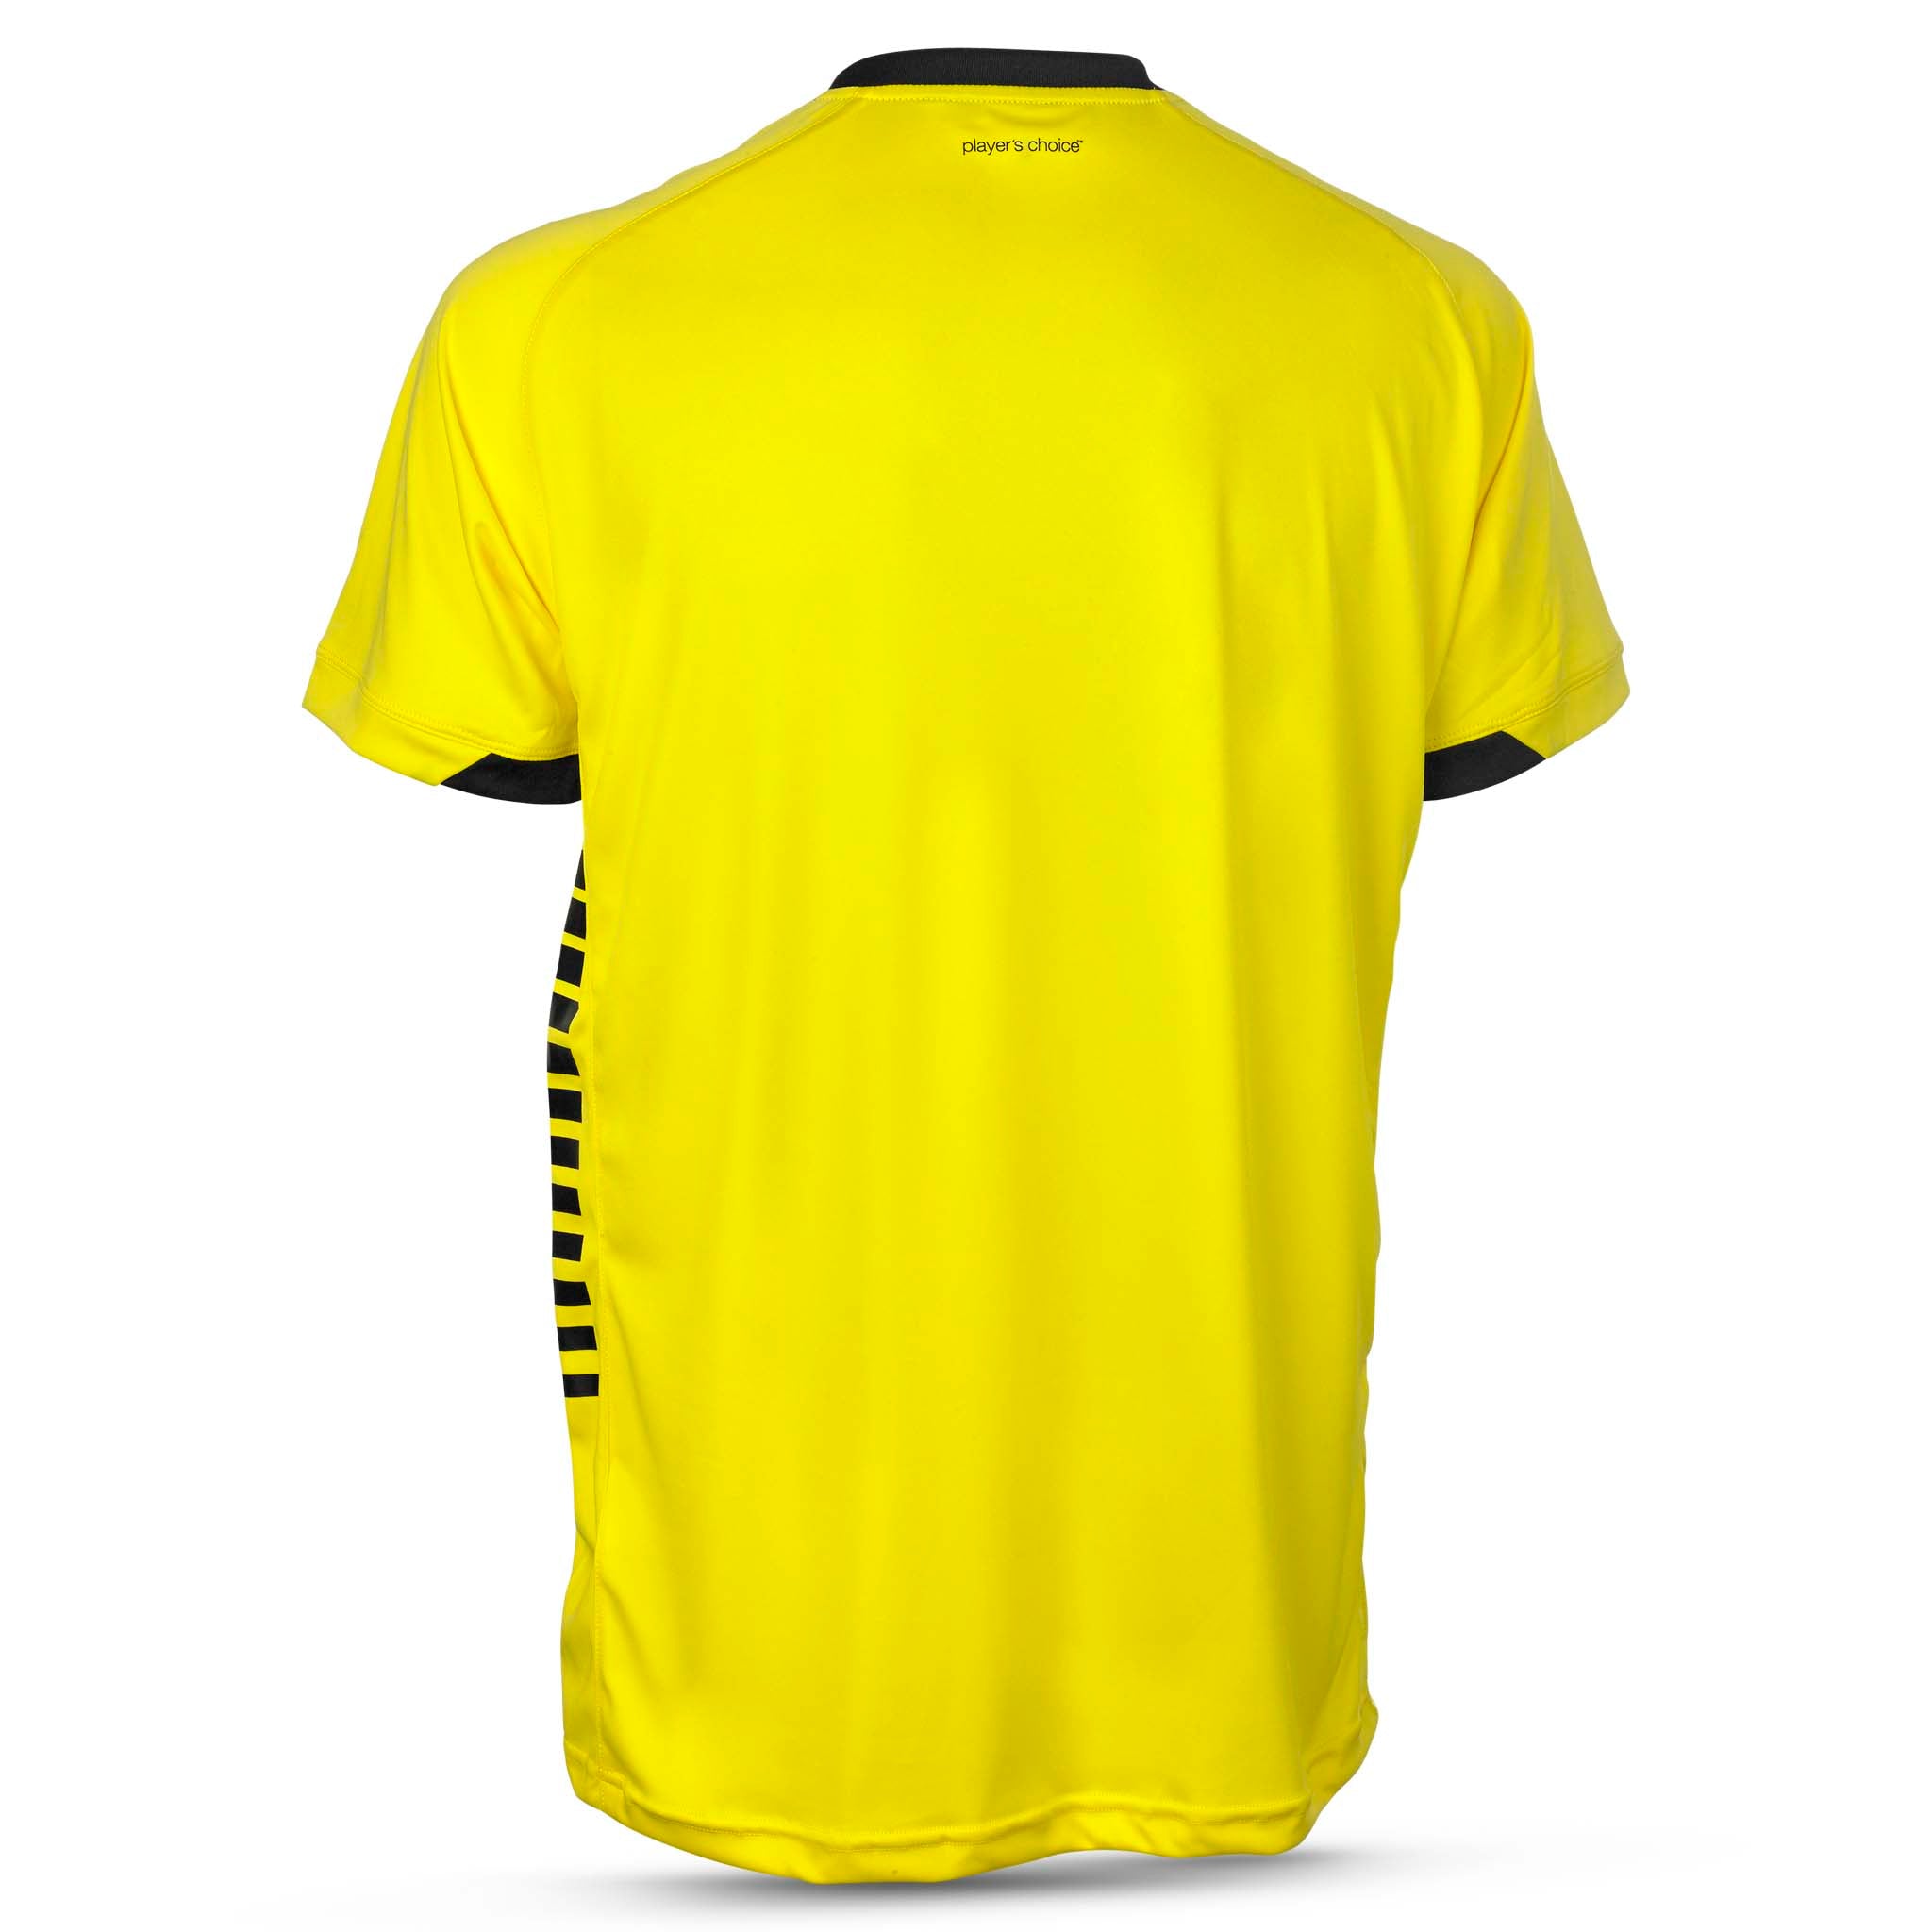 Spain Kortärmad spelartröja #färg_ #färg_gul/svart #färg_gul/svart